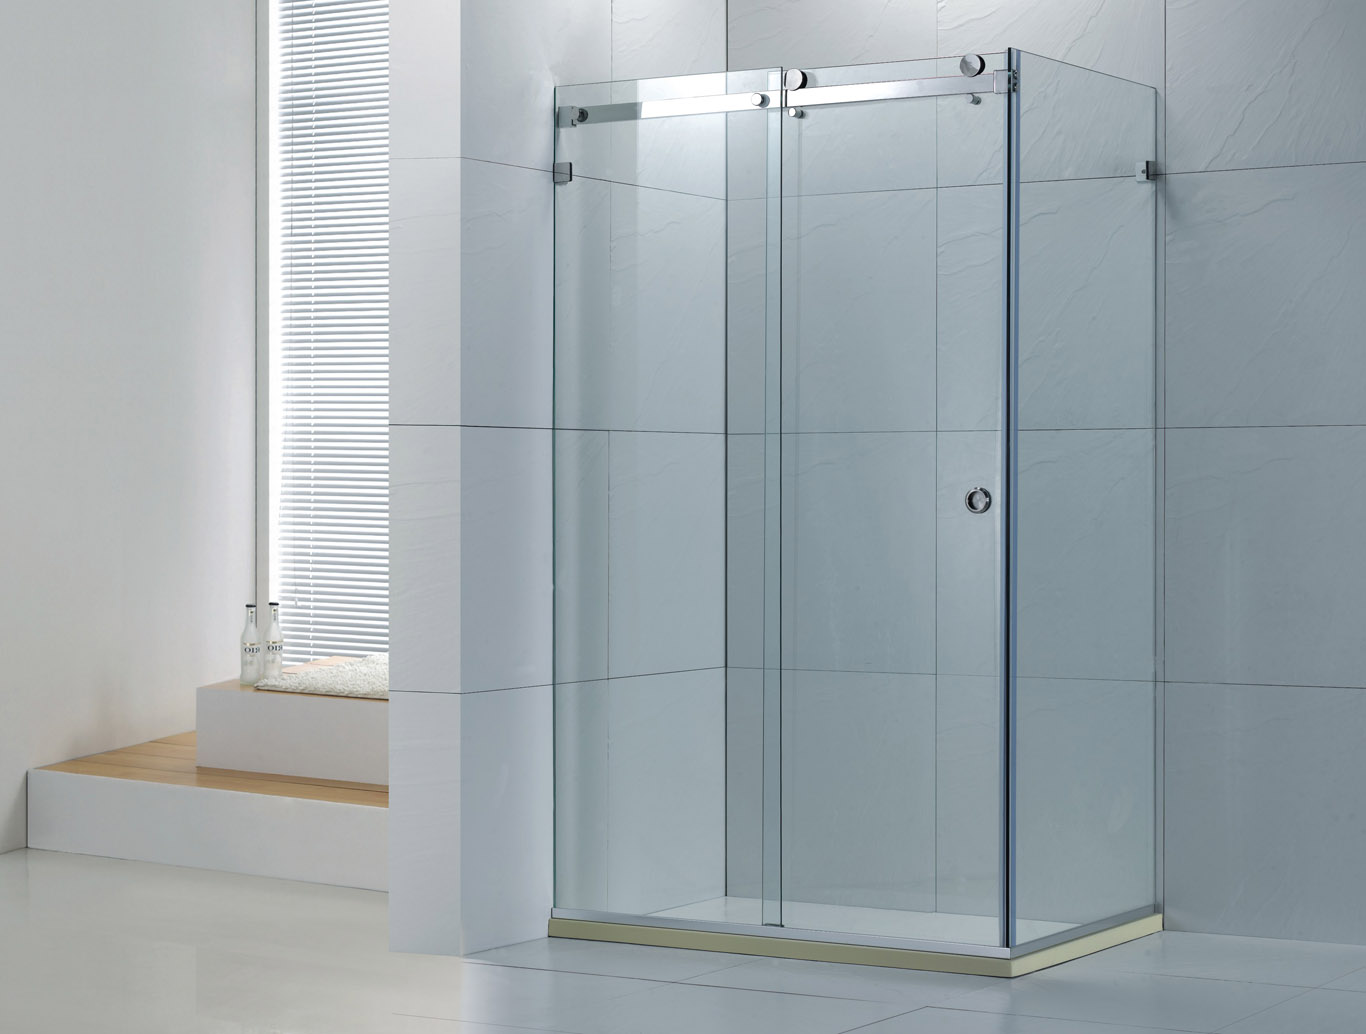 方形淋浴房 整体淋浴房 简易淋浴房 BR-004非标定做 沐浴房